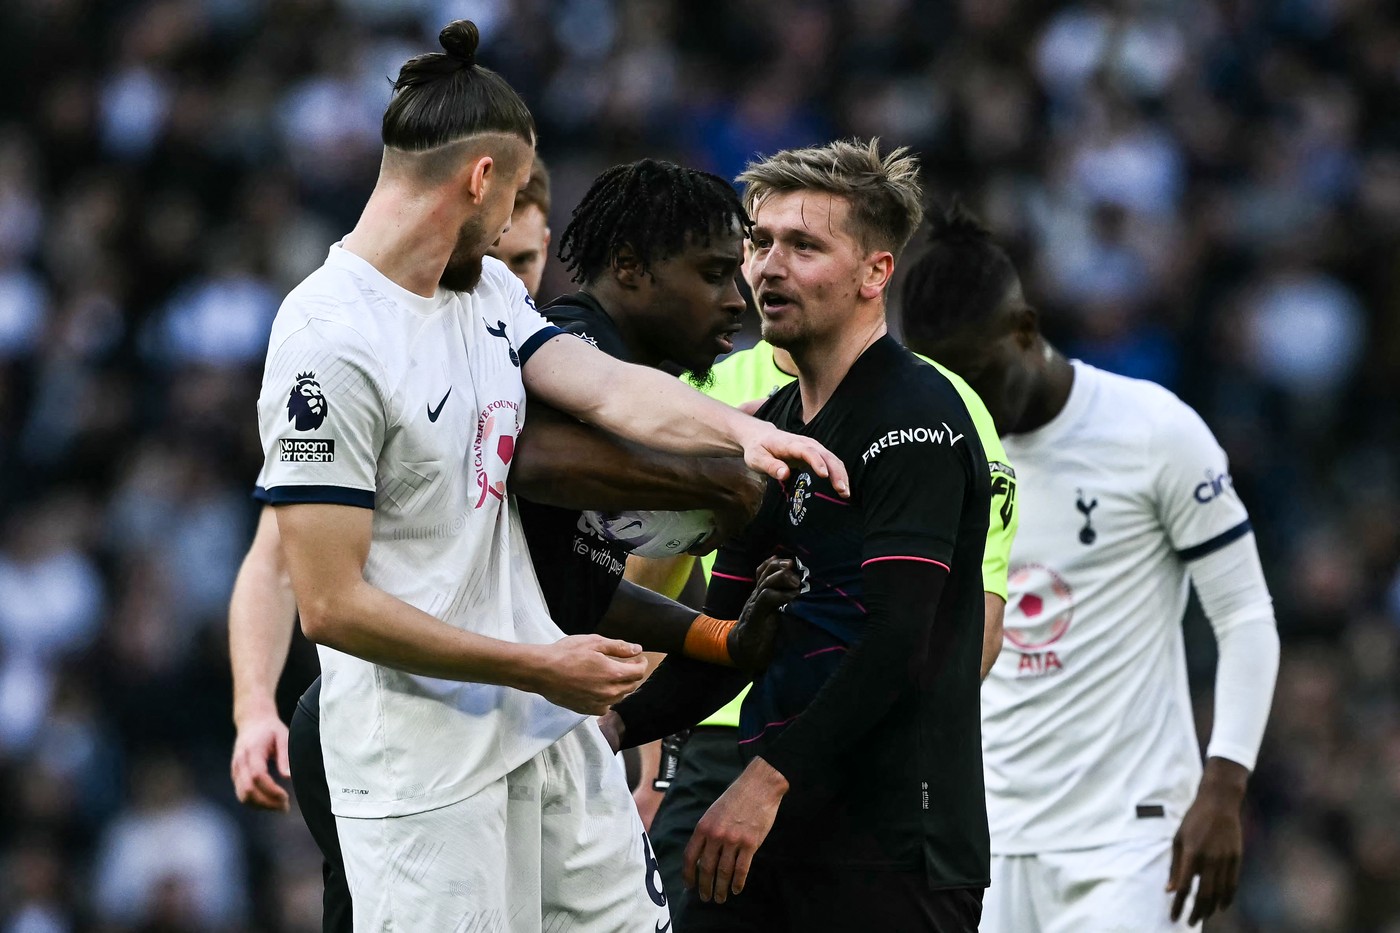 VIDEO. Radu Drăgușin a ieșit în evidență printr-un moment tensionat în Tottenham - Luton Town 2-1! Românul a fost aproape de o încăierare cu adversarii